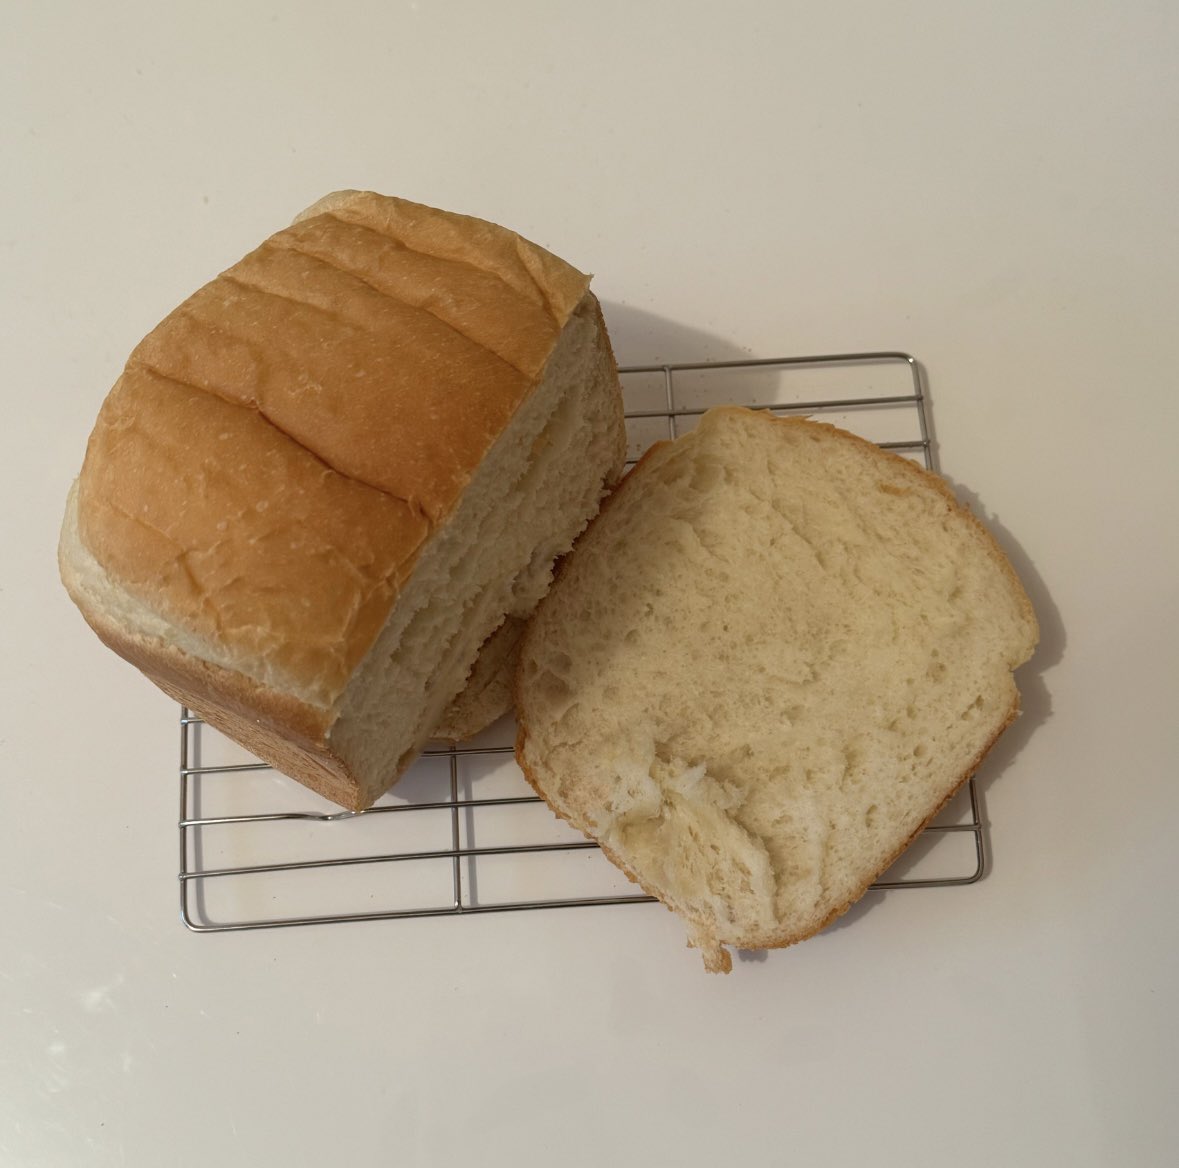 ふわっふわの食パン！
#パン作り #パン作り好きな人と繋がりたい